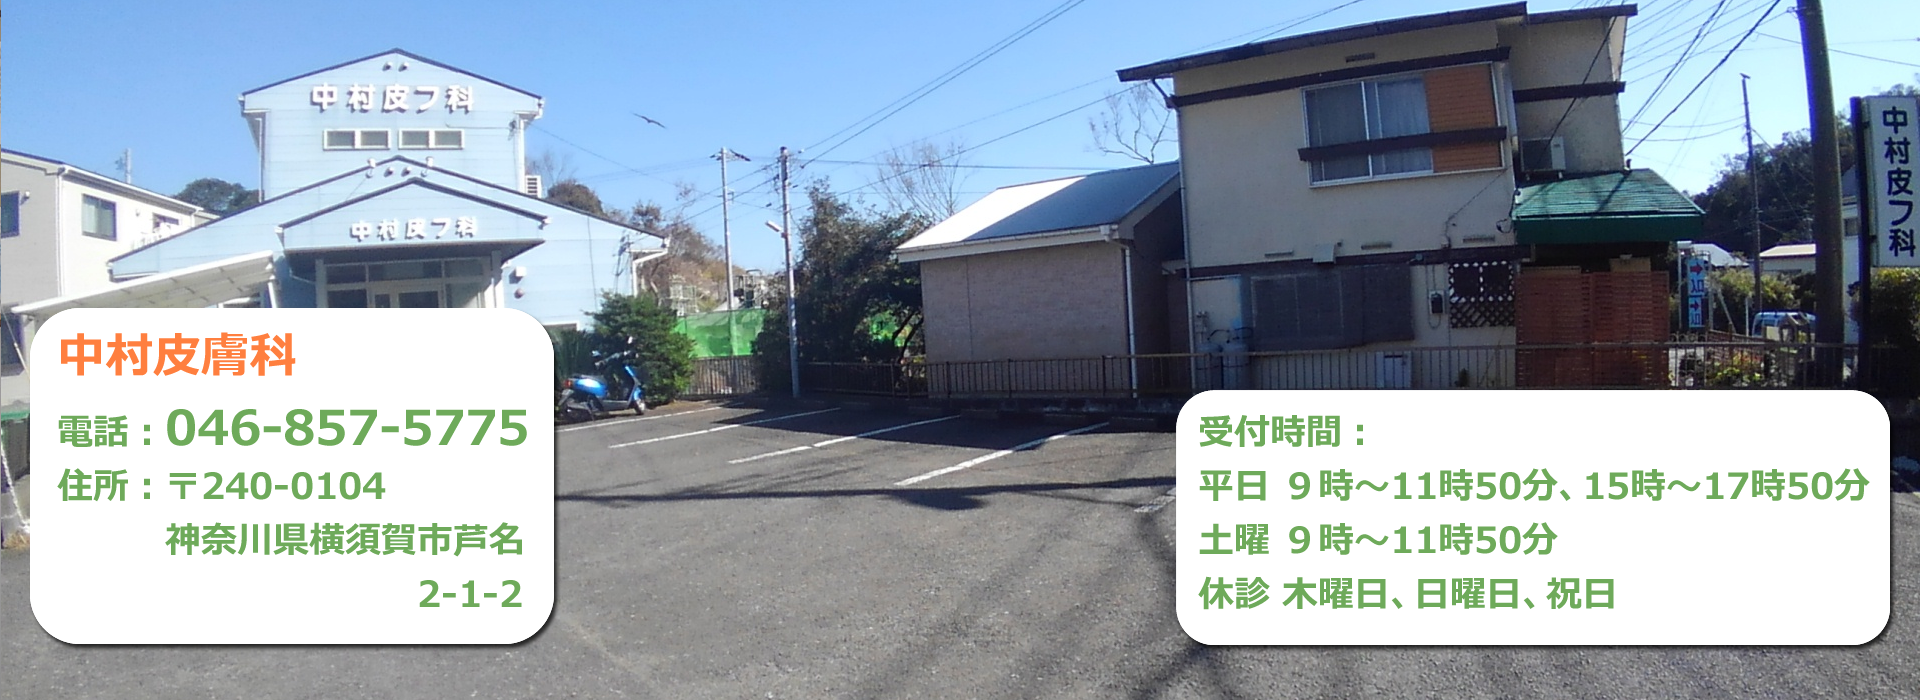 JR逗子駅よりバスで25分、バス停「佐島入り口」より徒歩3分